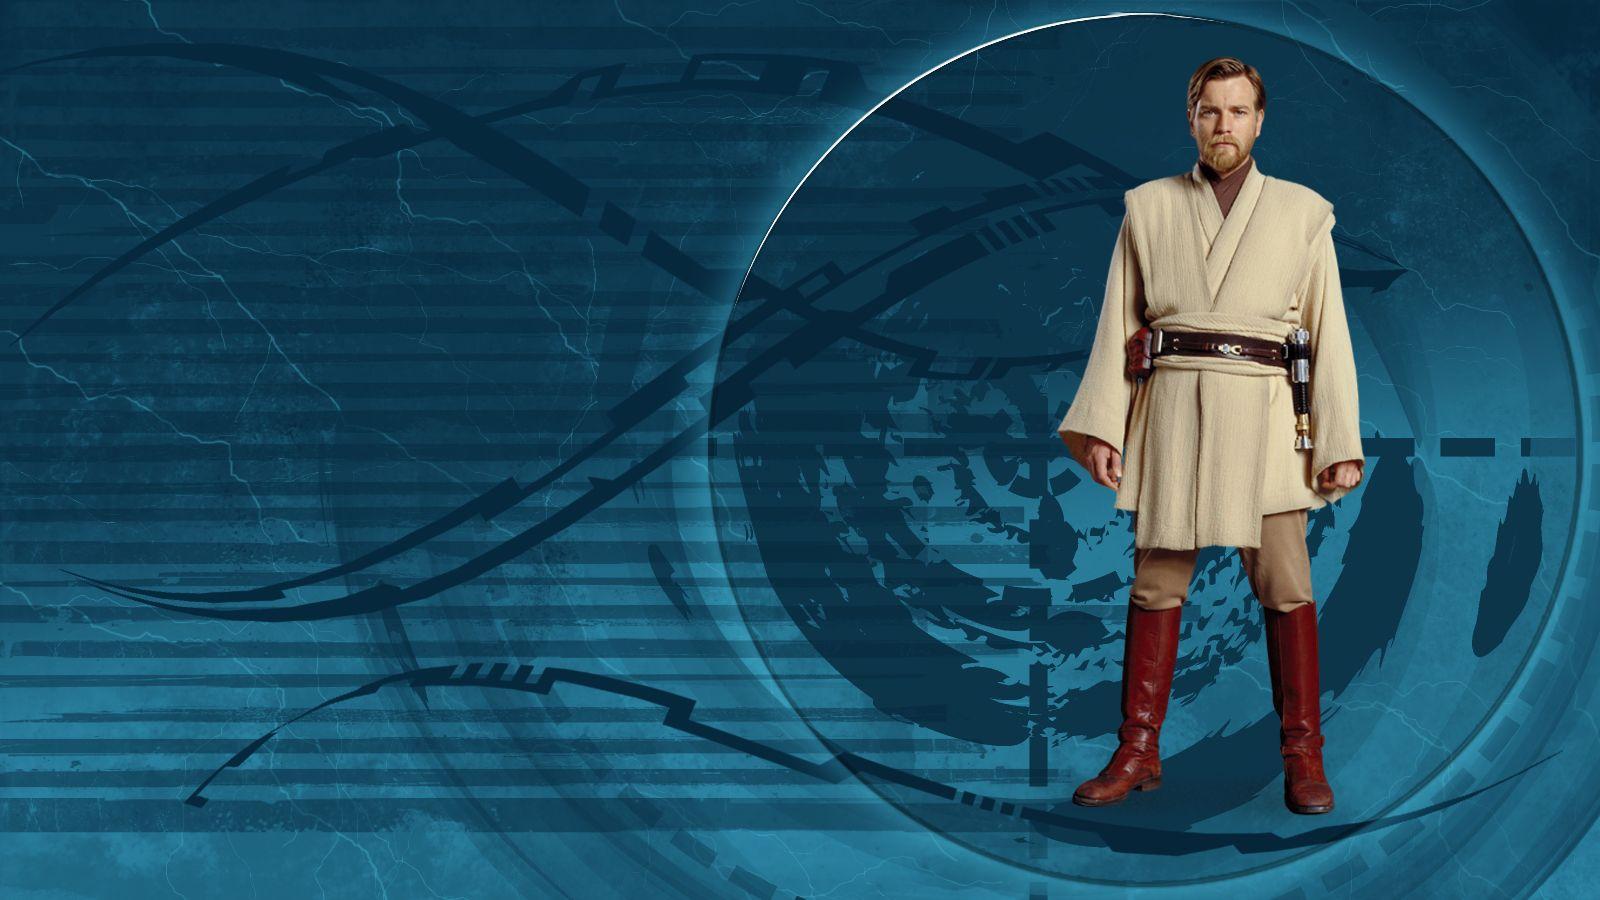 Obi Wan Kenobi Wallpapers Hd Wallpaper Cave